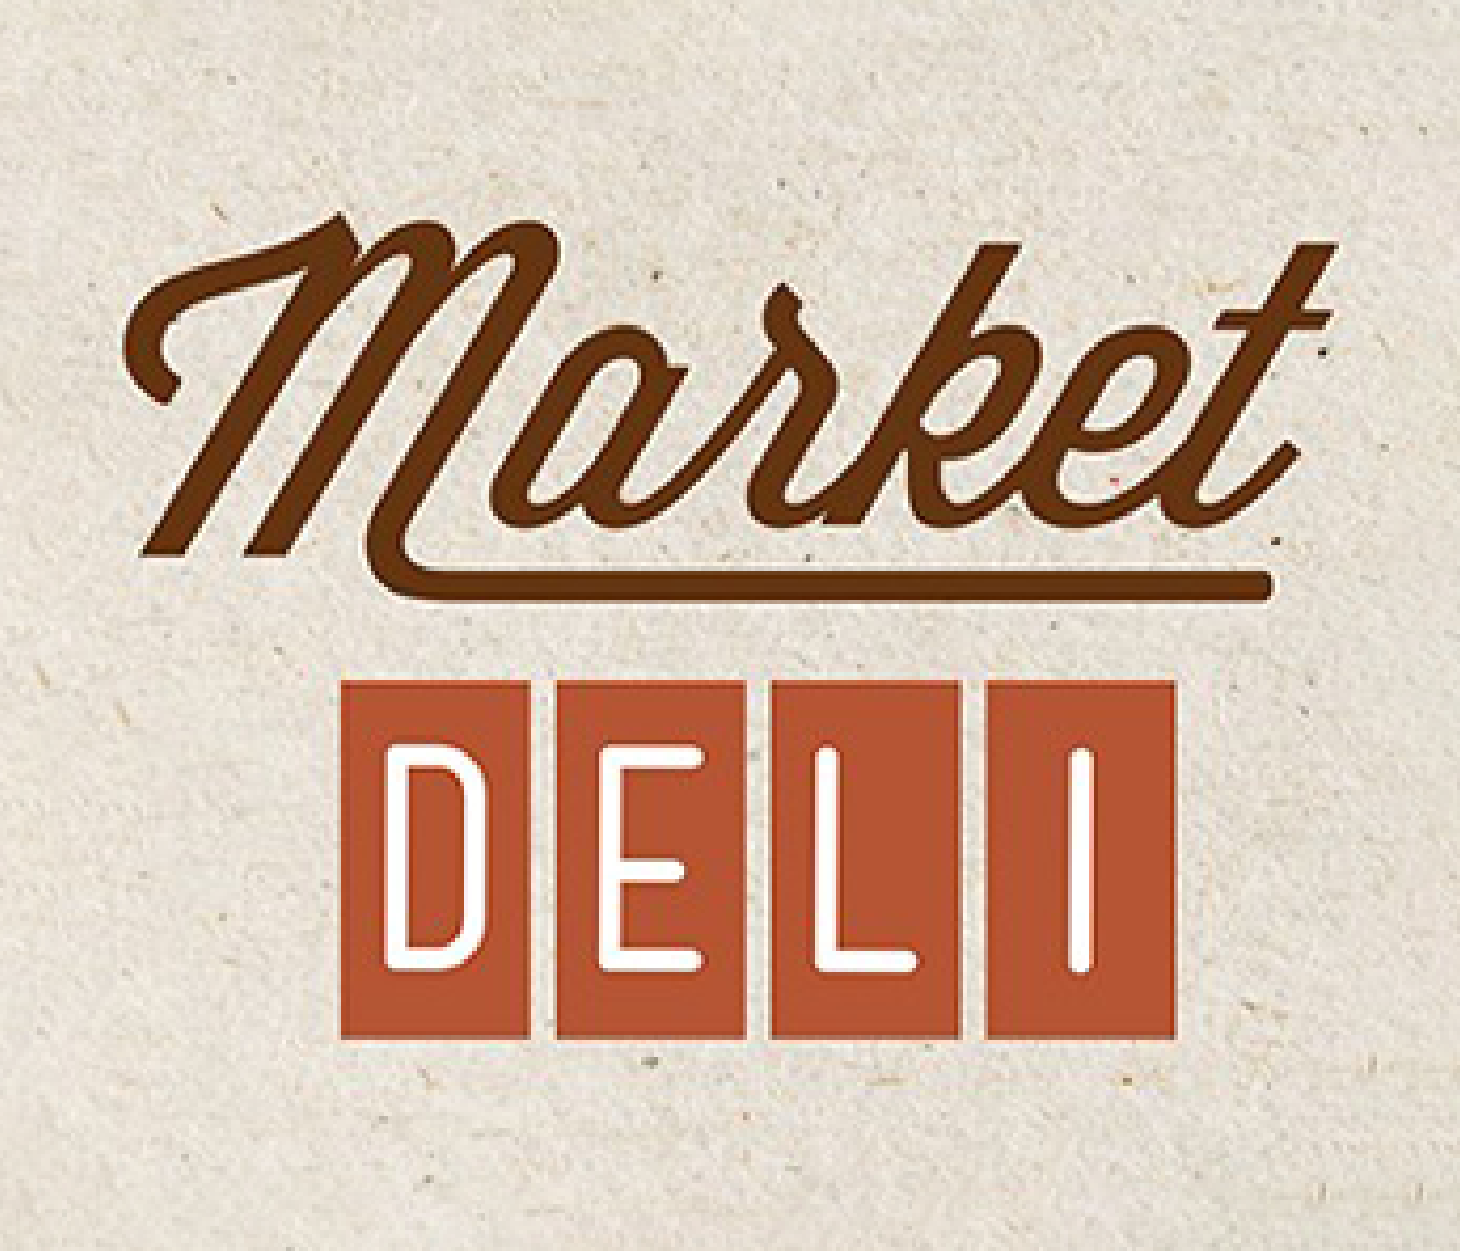 Market Deli Th